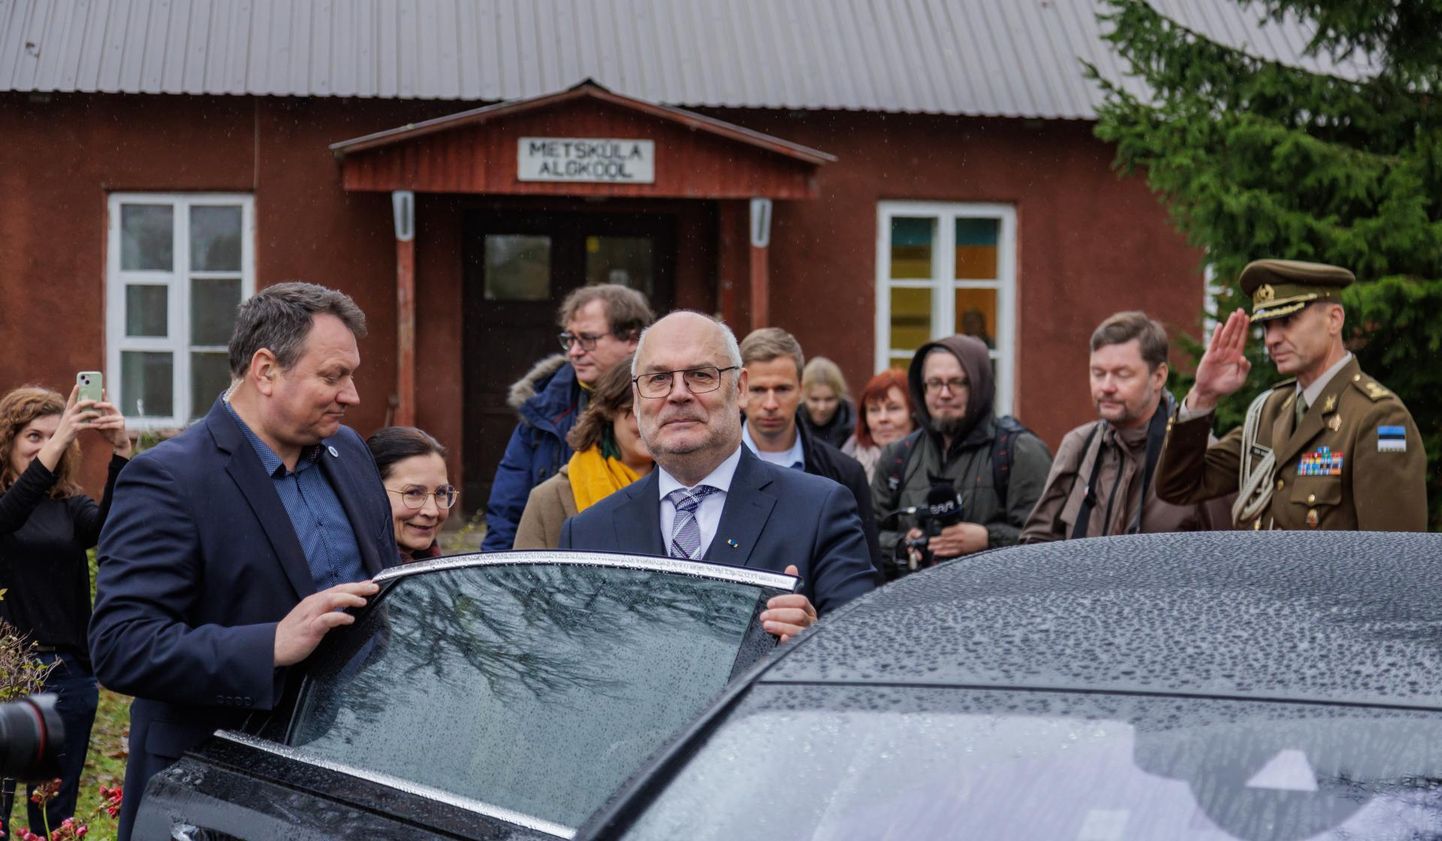 Esmaspäeval käis president Alar Karis Metsküla koolis ja kutsus teisipäevaks Lääneranna vallajuhid Kadriorgu kooli saatusest rääkima.